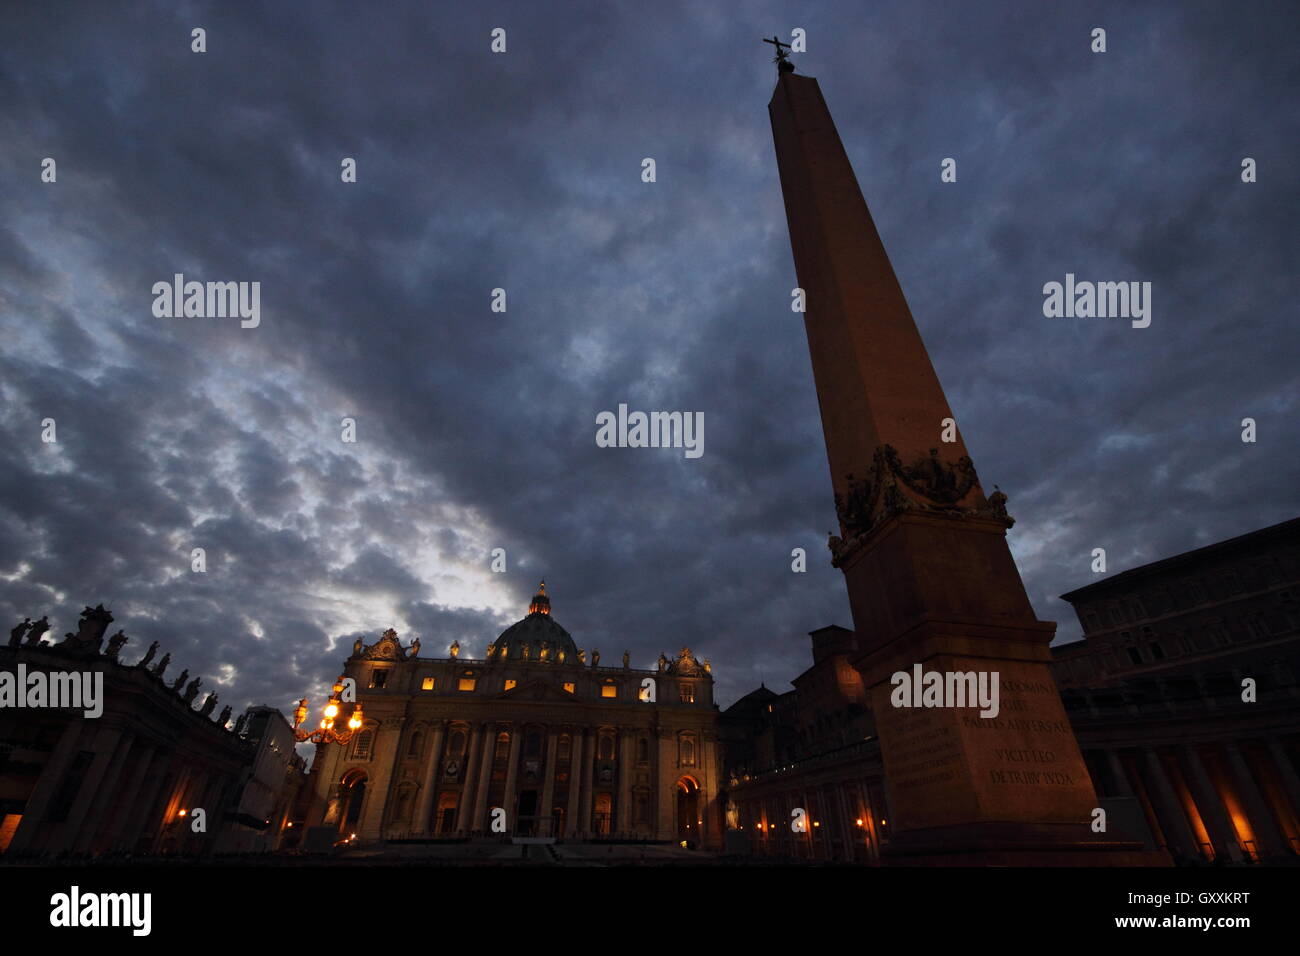 La célèbre Basilique Saint Pierre au Vatican par nuit, Rome, Italie Banque D'Images